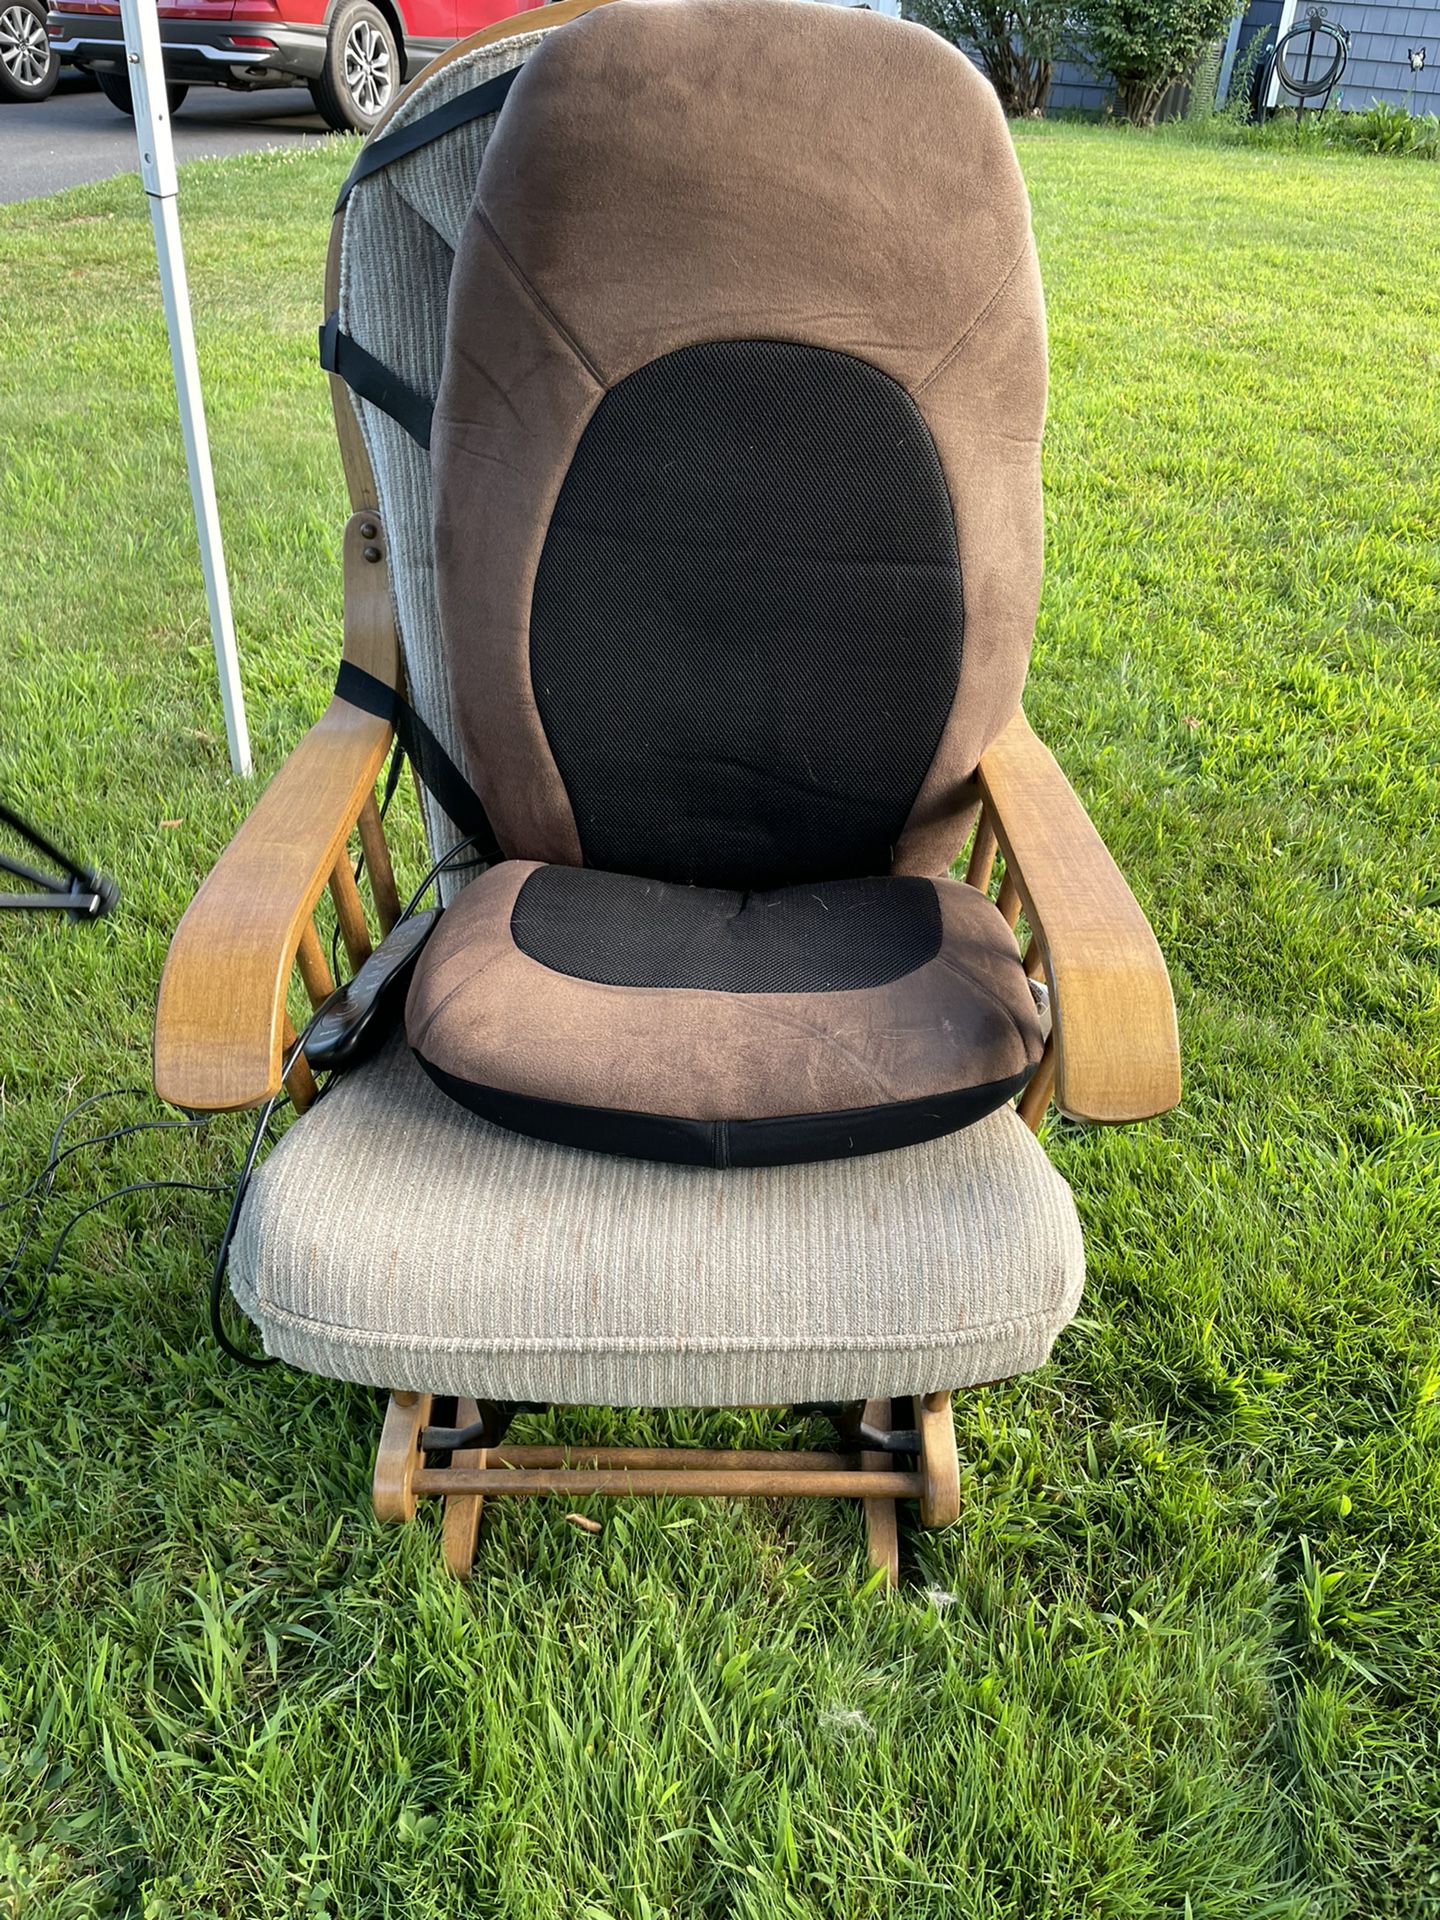 Glider Rocking Chair